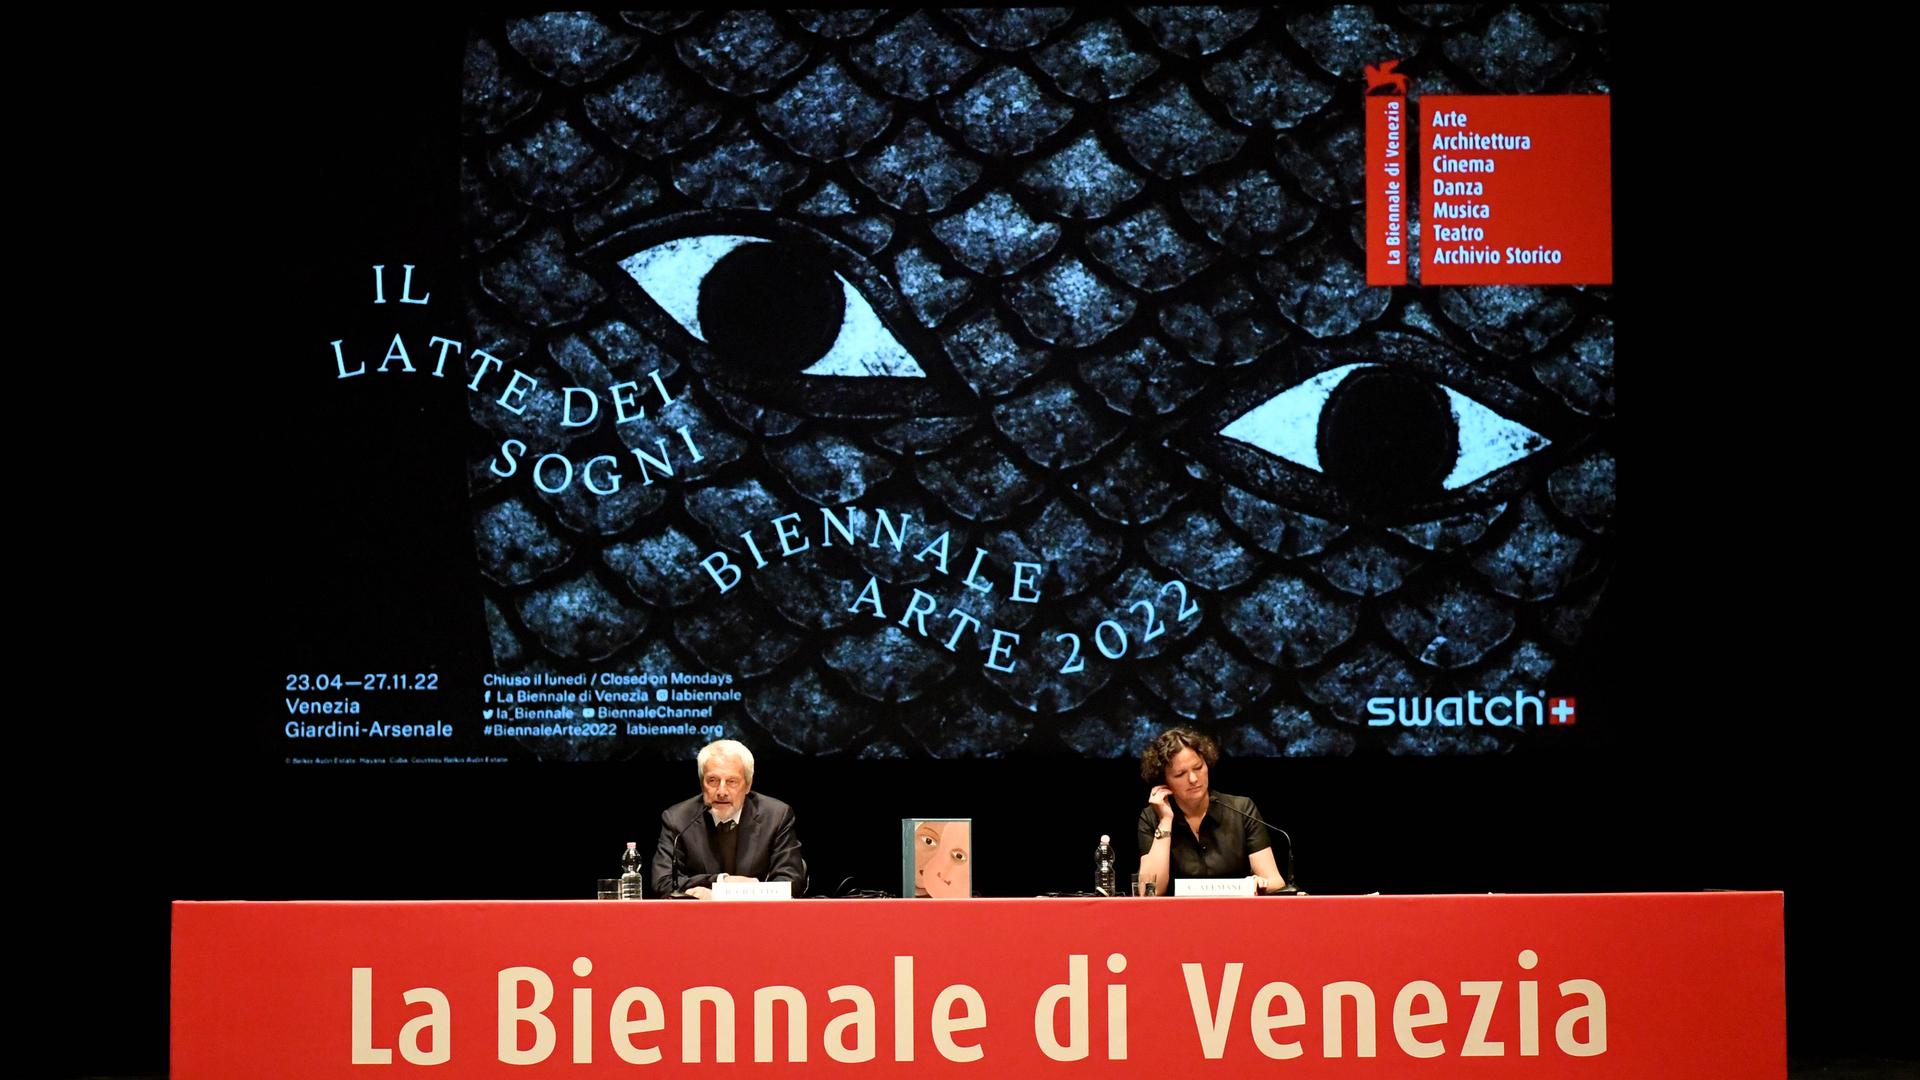 Auf dem Podium bei der Pressekonferenz der 59. Kunstbiennale Venedig sitzen Biennale-Präsident Roberto Cicutto und Kuratorin Cecilia Alemani vor einem großen Biennale-Plakat